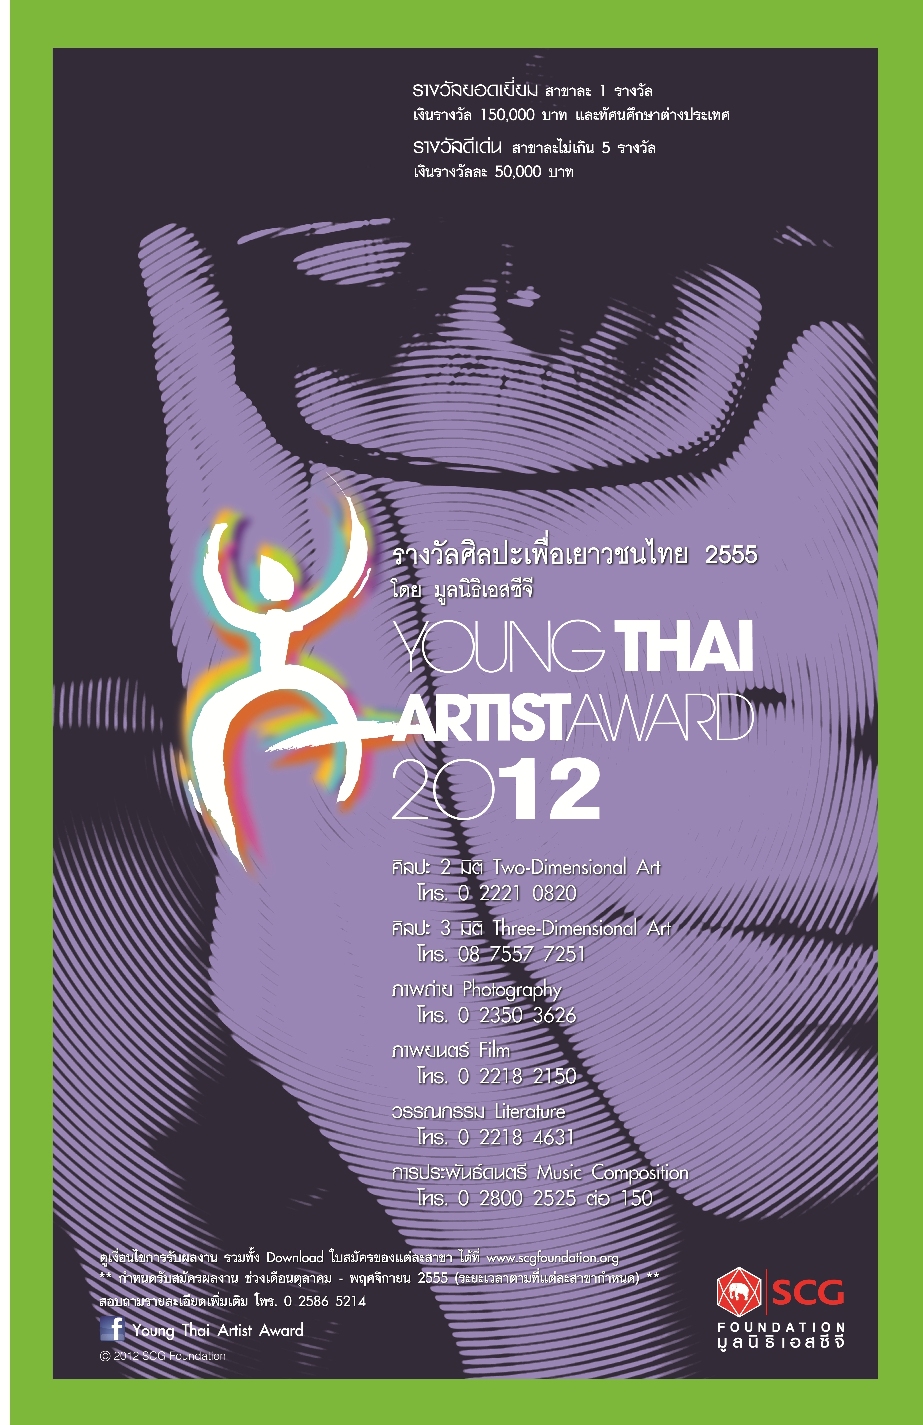 มูลนิธิเอสซีจี ชวนเยาวชนนัก(อยาก)เขียน ปล่อยของกับโครงการ Young Thai Artist Award 2012 ชิงรางวัลมูลค่ารวมกว่า 2.5 ล้านบาท